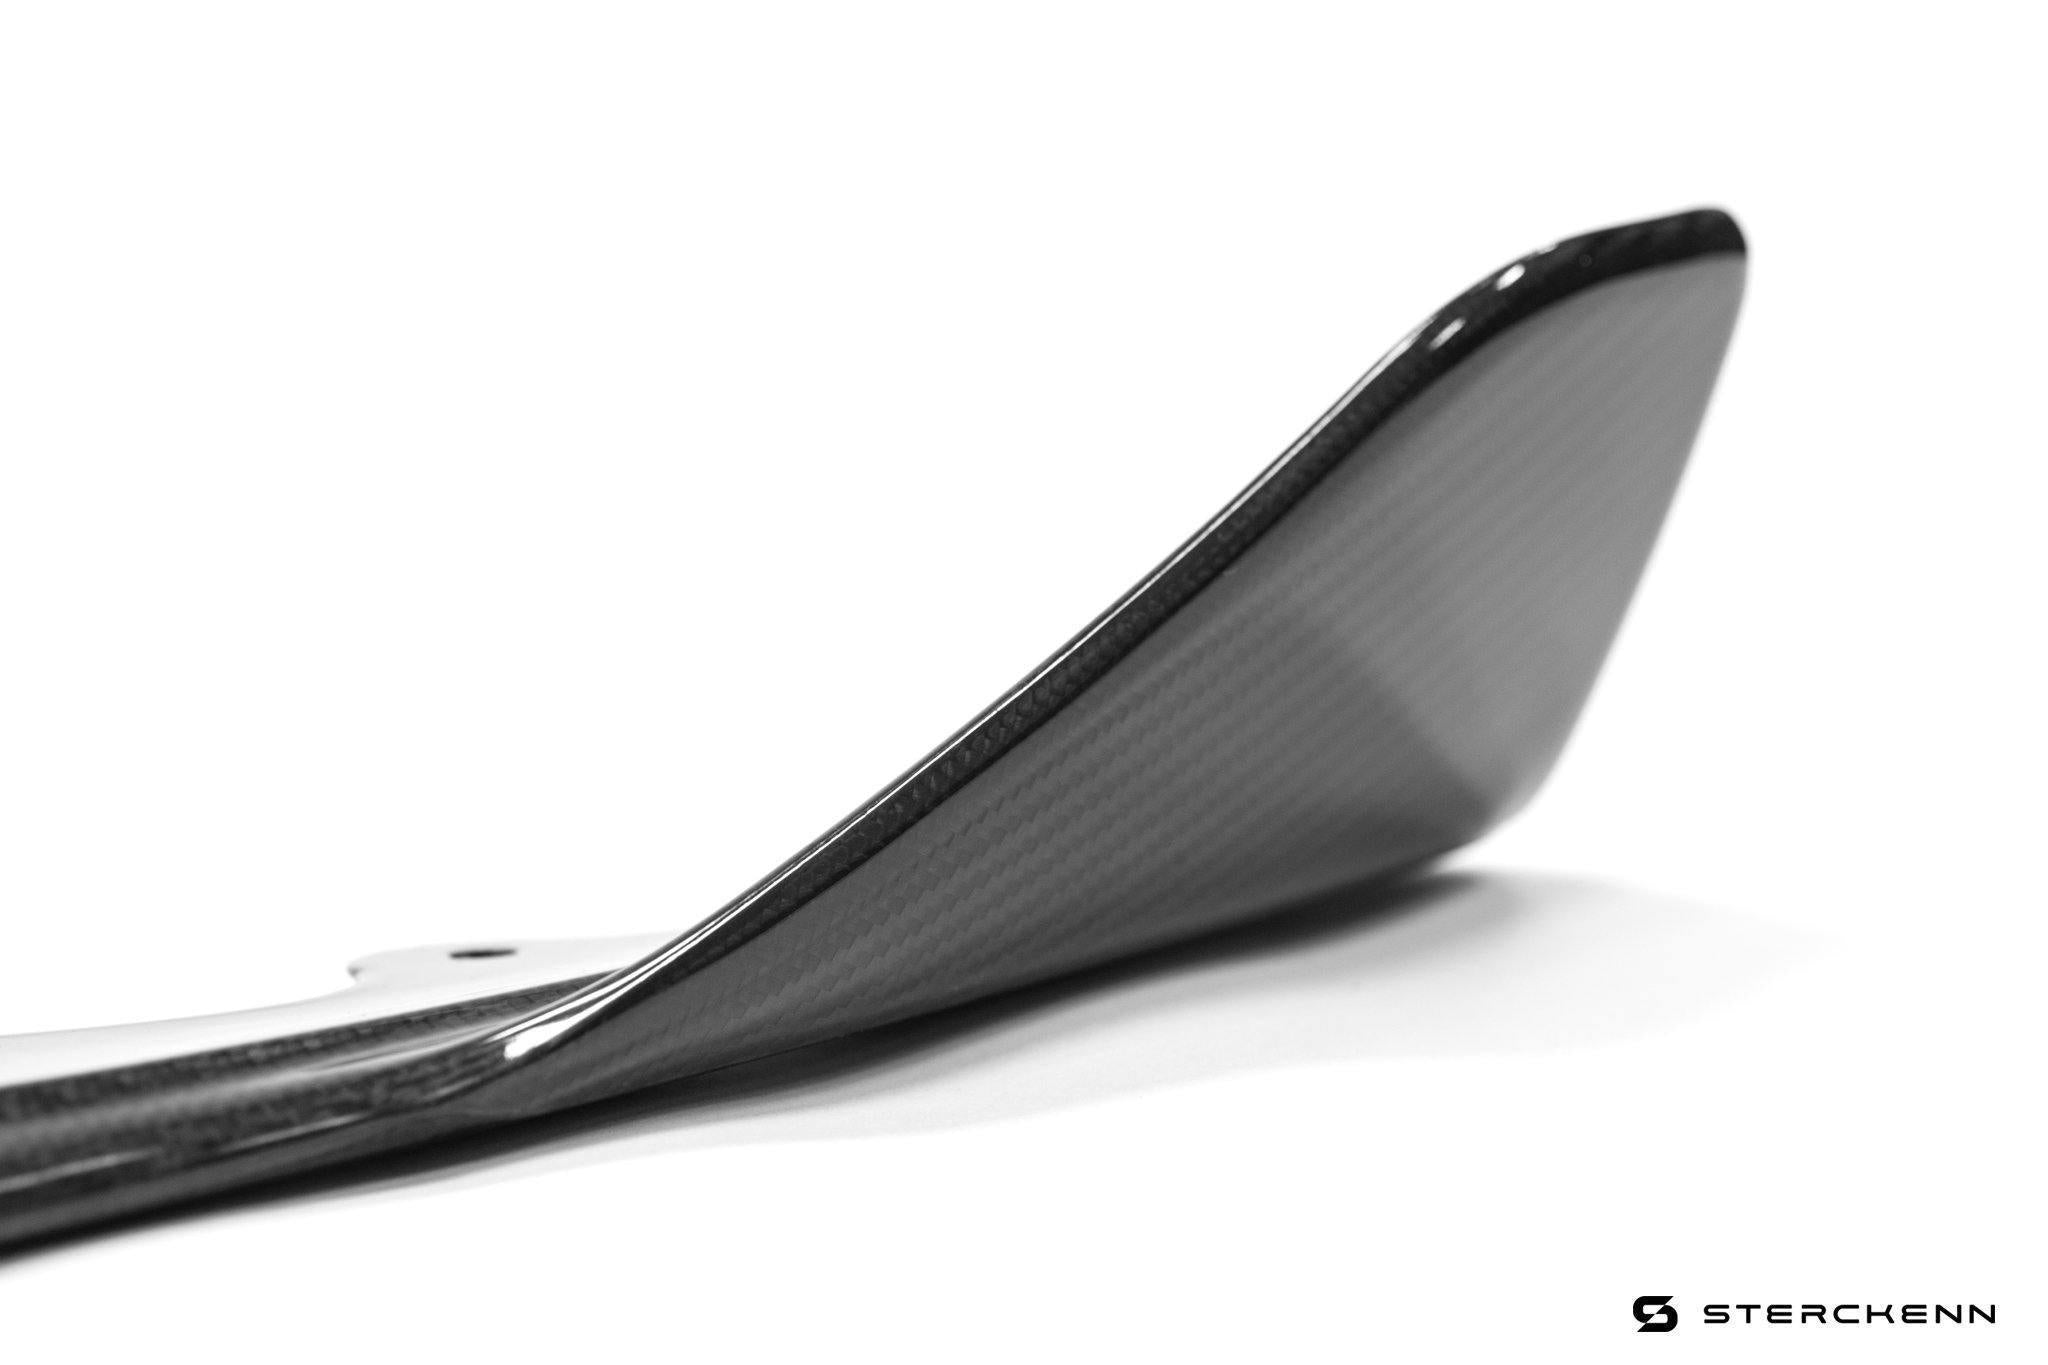 Sterckenn Carbon Fibre Front Lip for BMW X5M (2020+, F95)